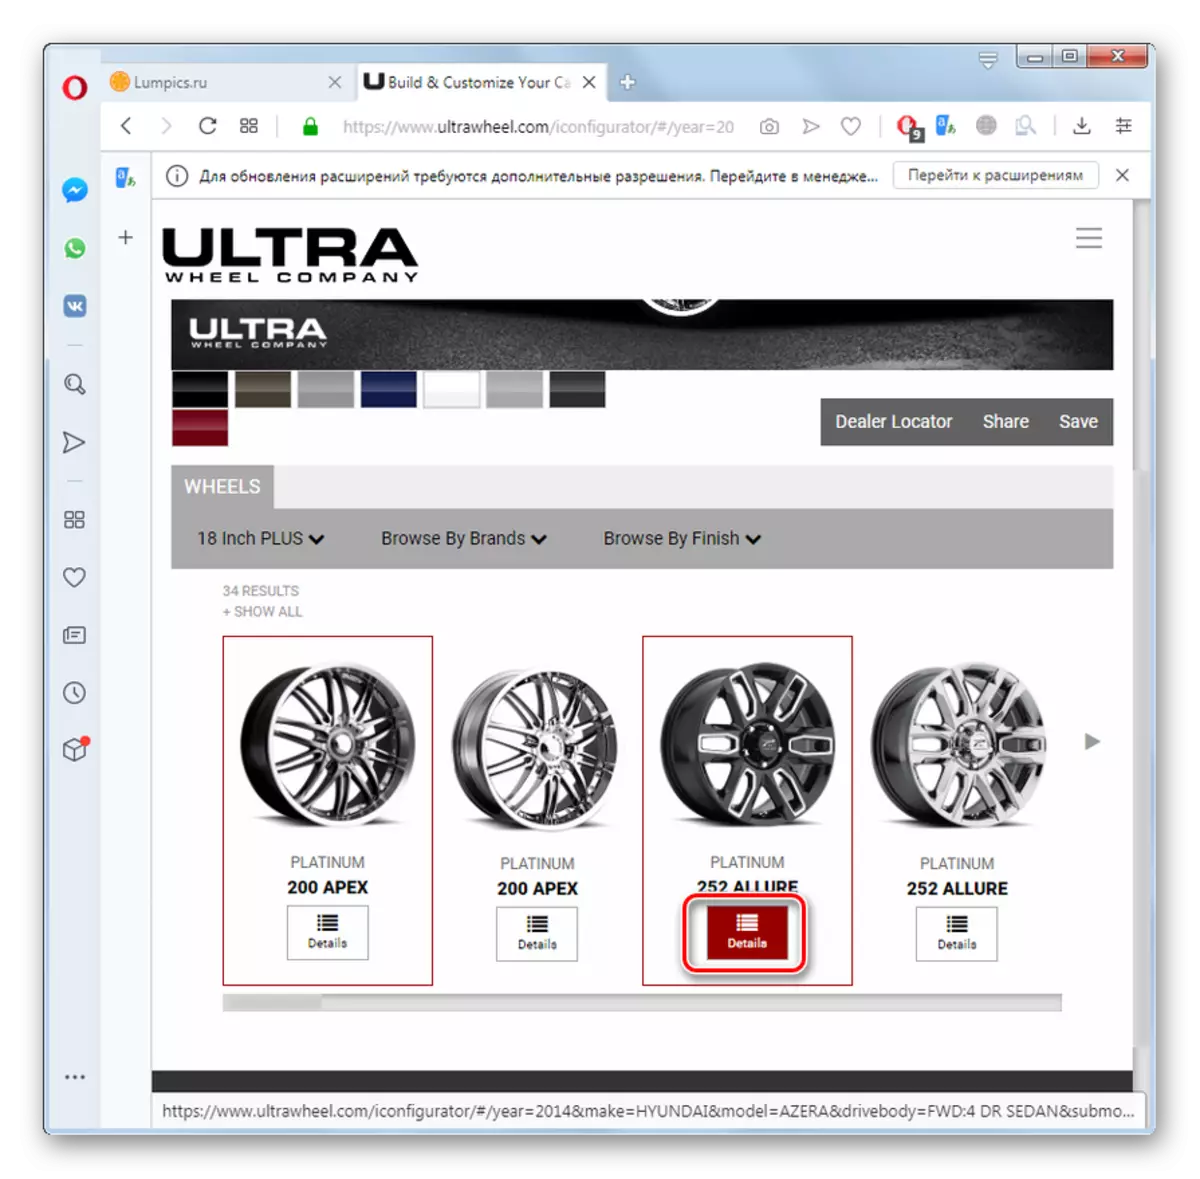 ໄປທີ່ການເບິ່ງຂໍ້ມູນກ່ຽວກັບຊຸດຂອງລໍ້ໃນເວັບໄຊທ໌ ultrawheel ໃນ Opera browser